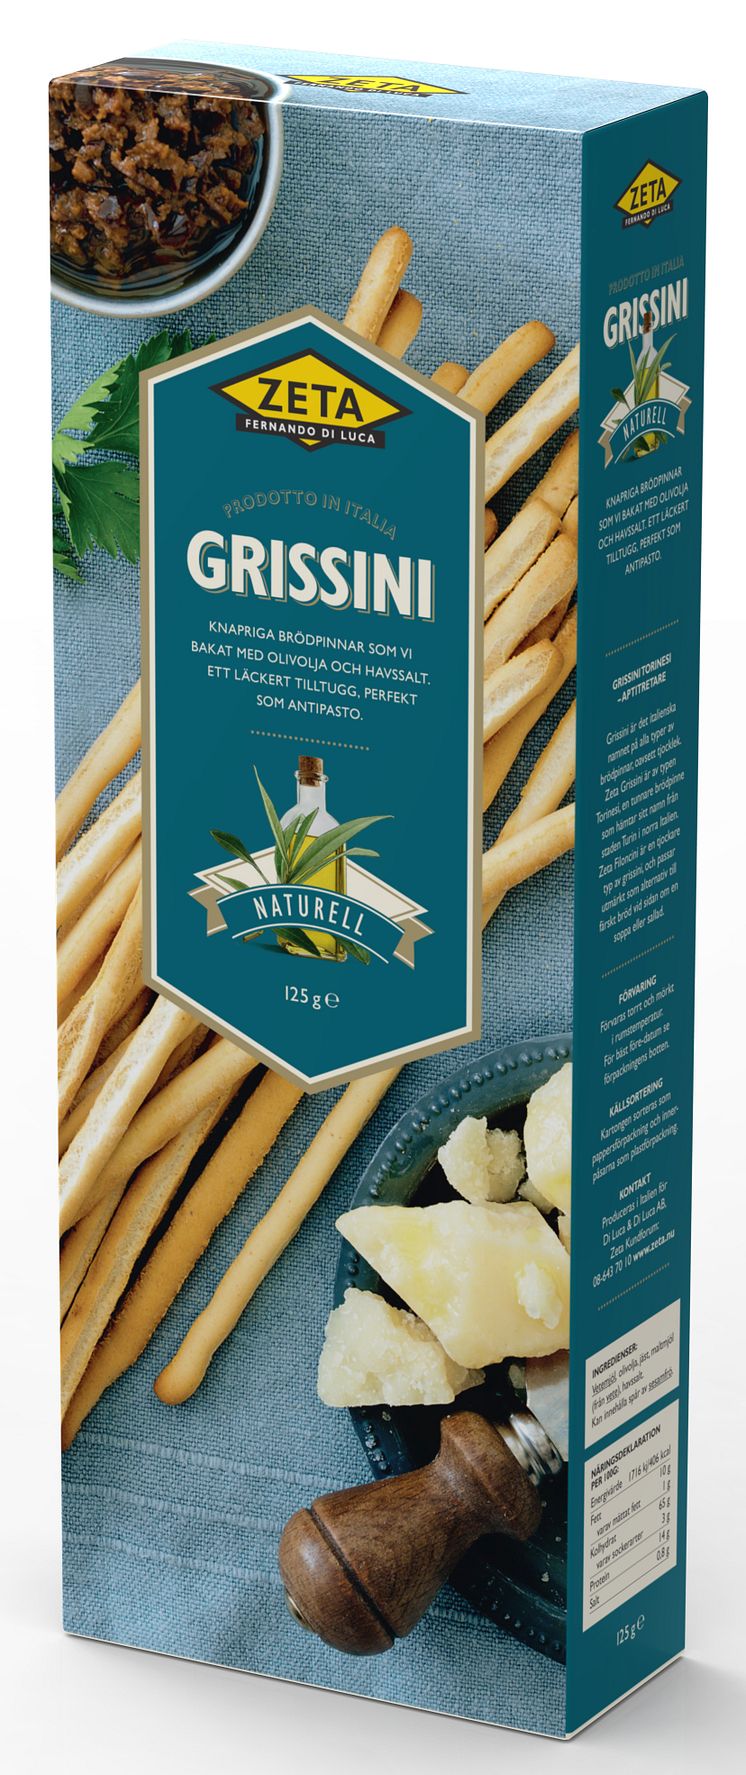 Grissini, knapriga italienska brödpinnar, från Zeta